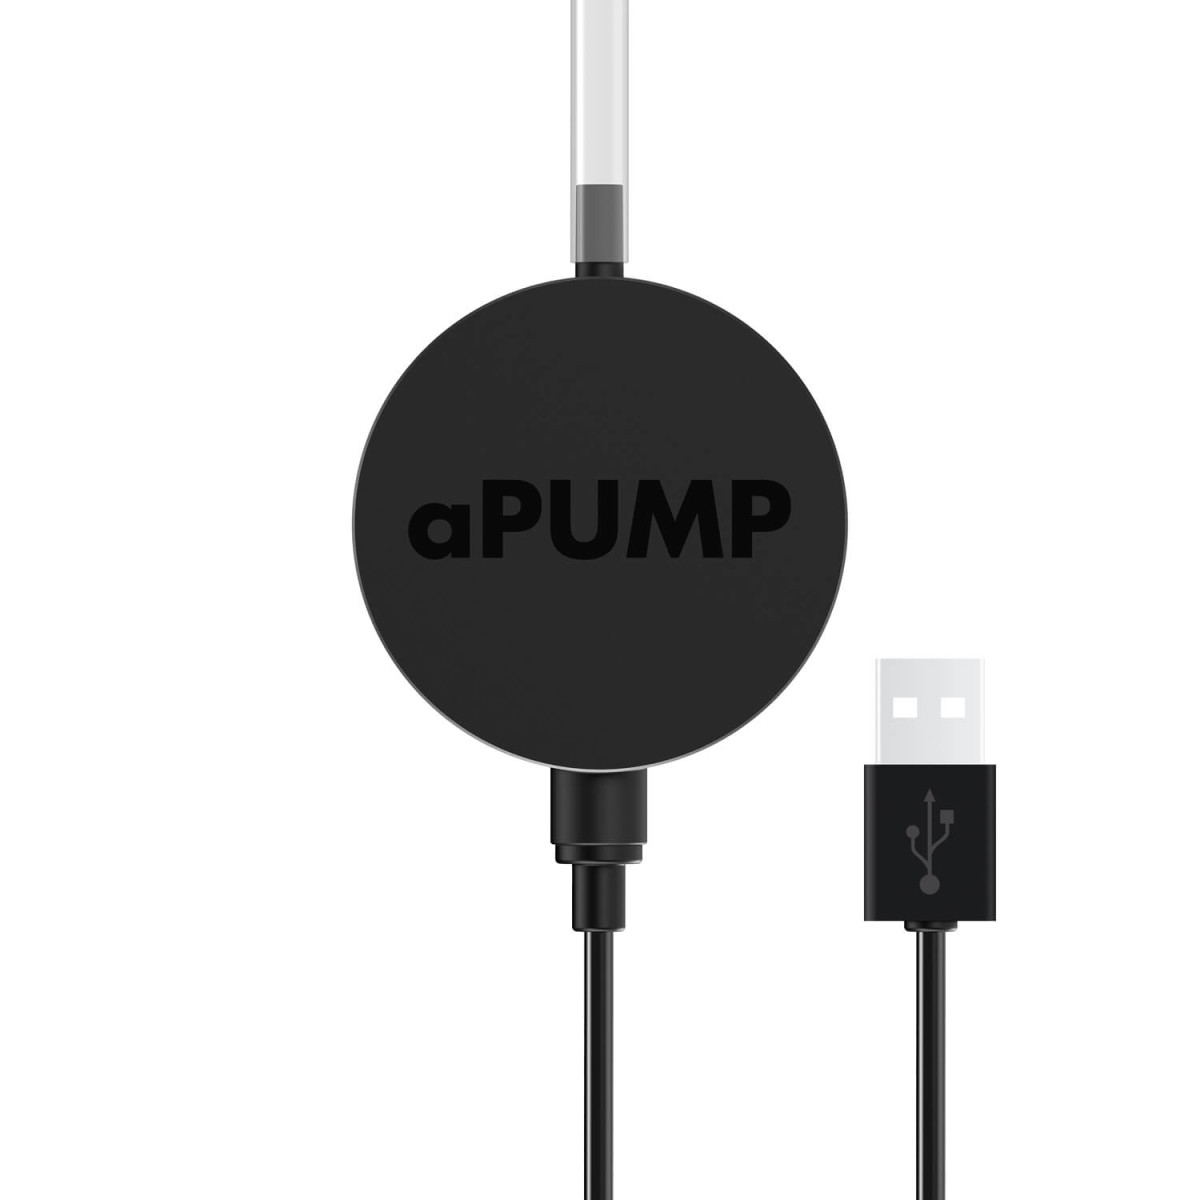 aPUMP USB - найтихіший і найменший акваріумний компресор в світі, до 100 л